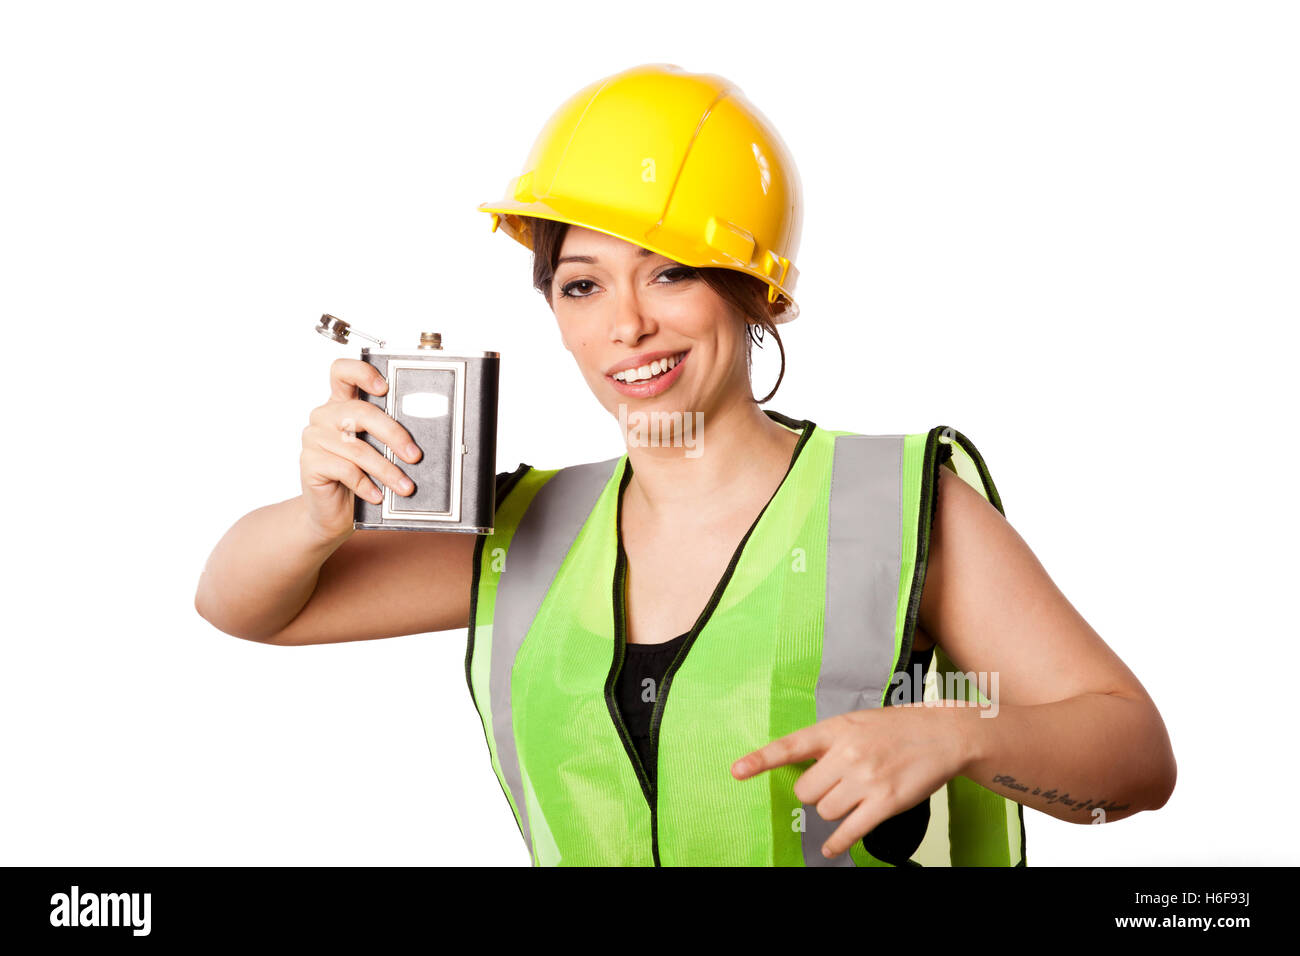 Giovani caucasici donna adulta nei suoi metà di 20s indossando riflettivo giallo casco di sicurezza e giubbotto di sicurezza, sollevando una fiaschetta mentre essere Foto Stock